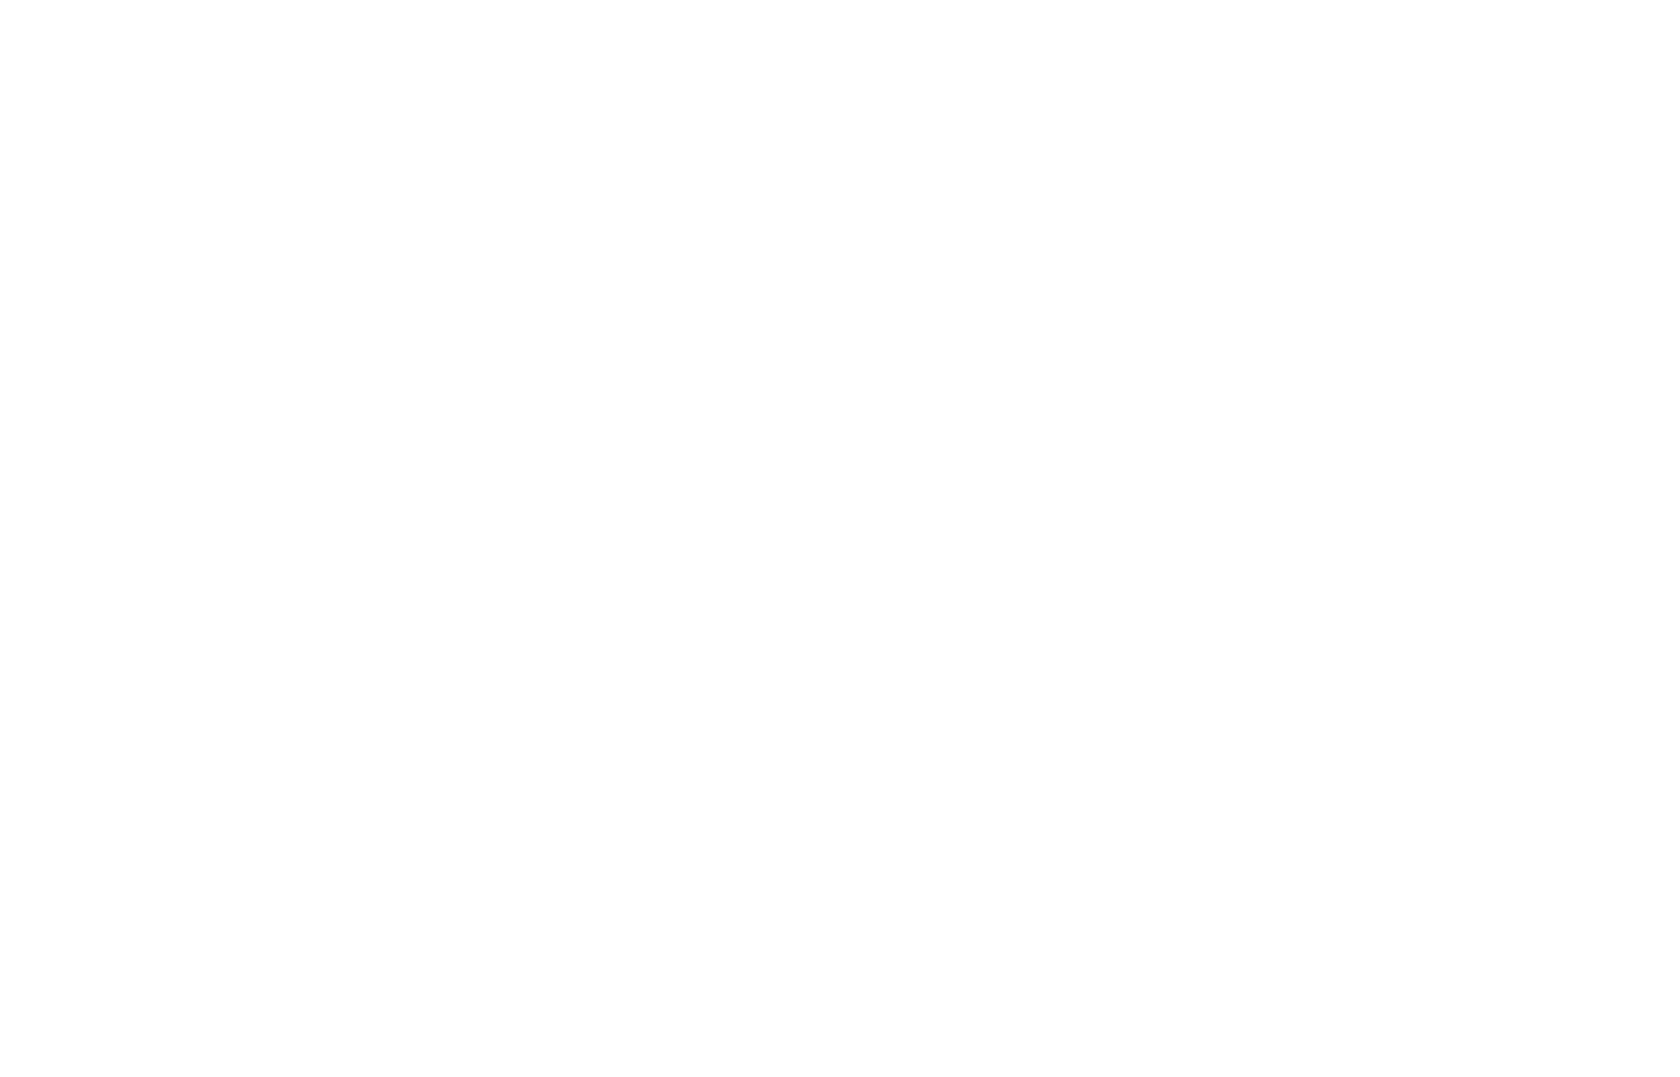 Пример брендбука сети аптек — Логотип недопустимое применение на сложном фоне